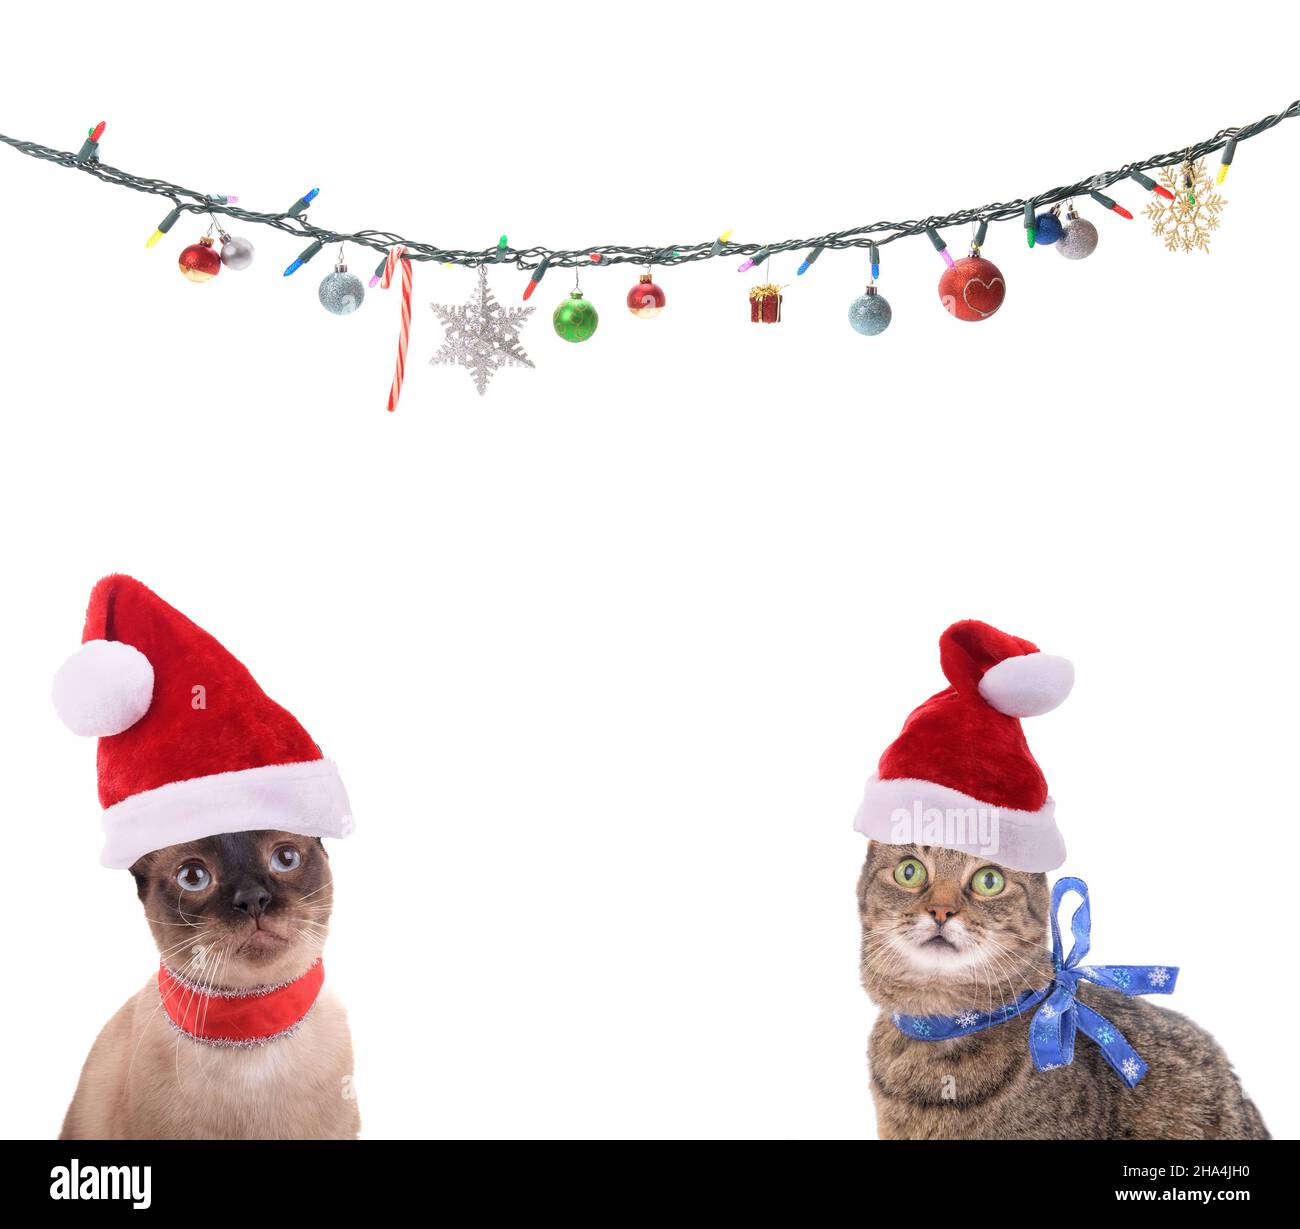 Deux chats portant des chapeaux de père Noël, regardant vers les lumières et les ornements de Noël; avec un espace de copie au milieu; sur fond blanc Banque D'Images